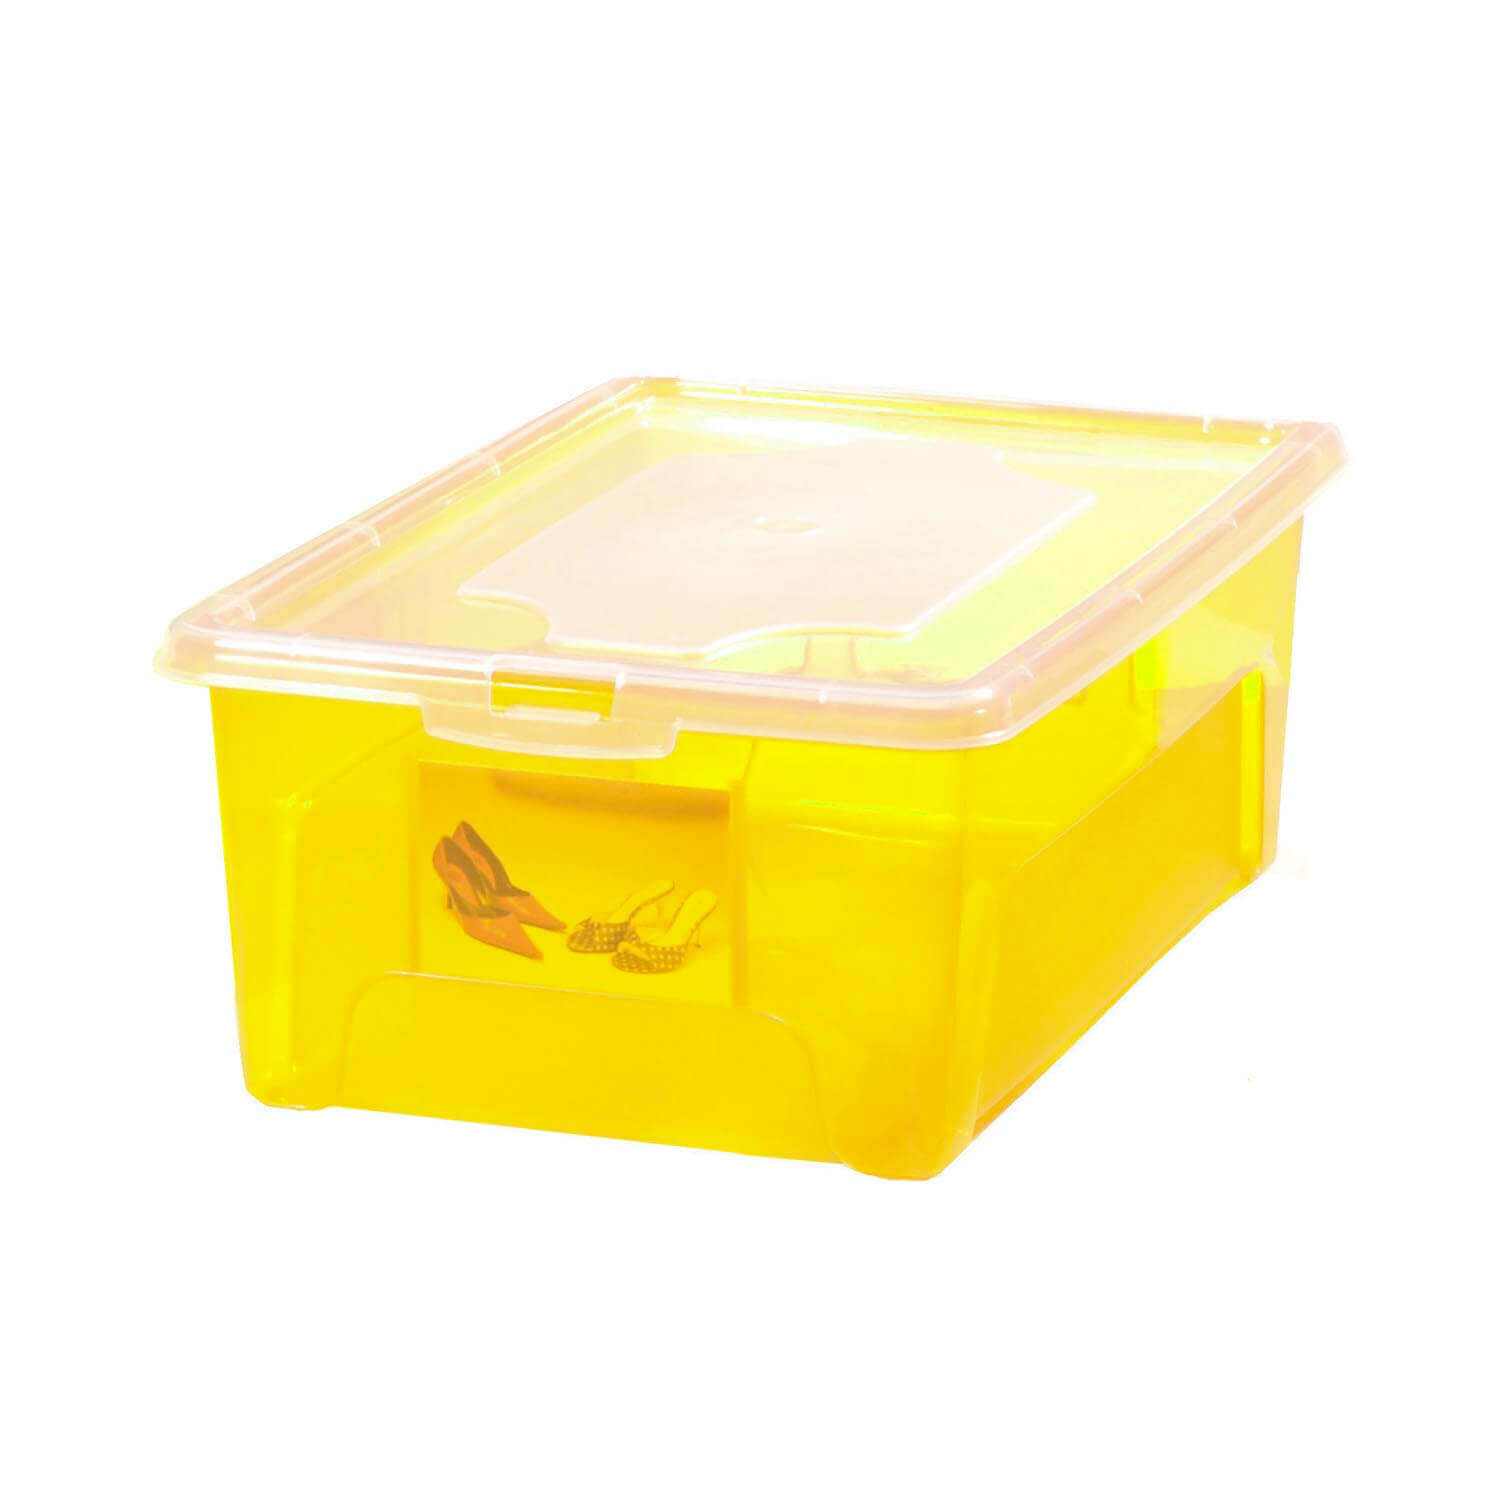 Aufbewahrungsbox "Easybox" 10 L in gelb, Kunststoffbox